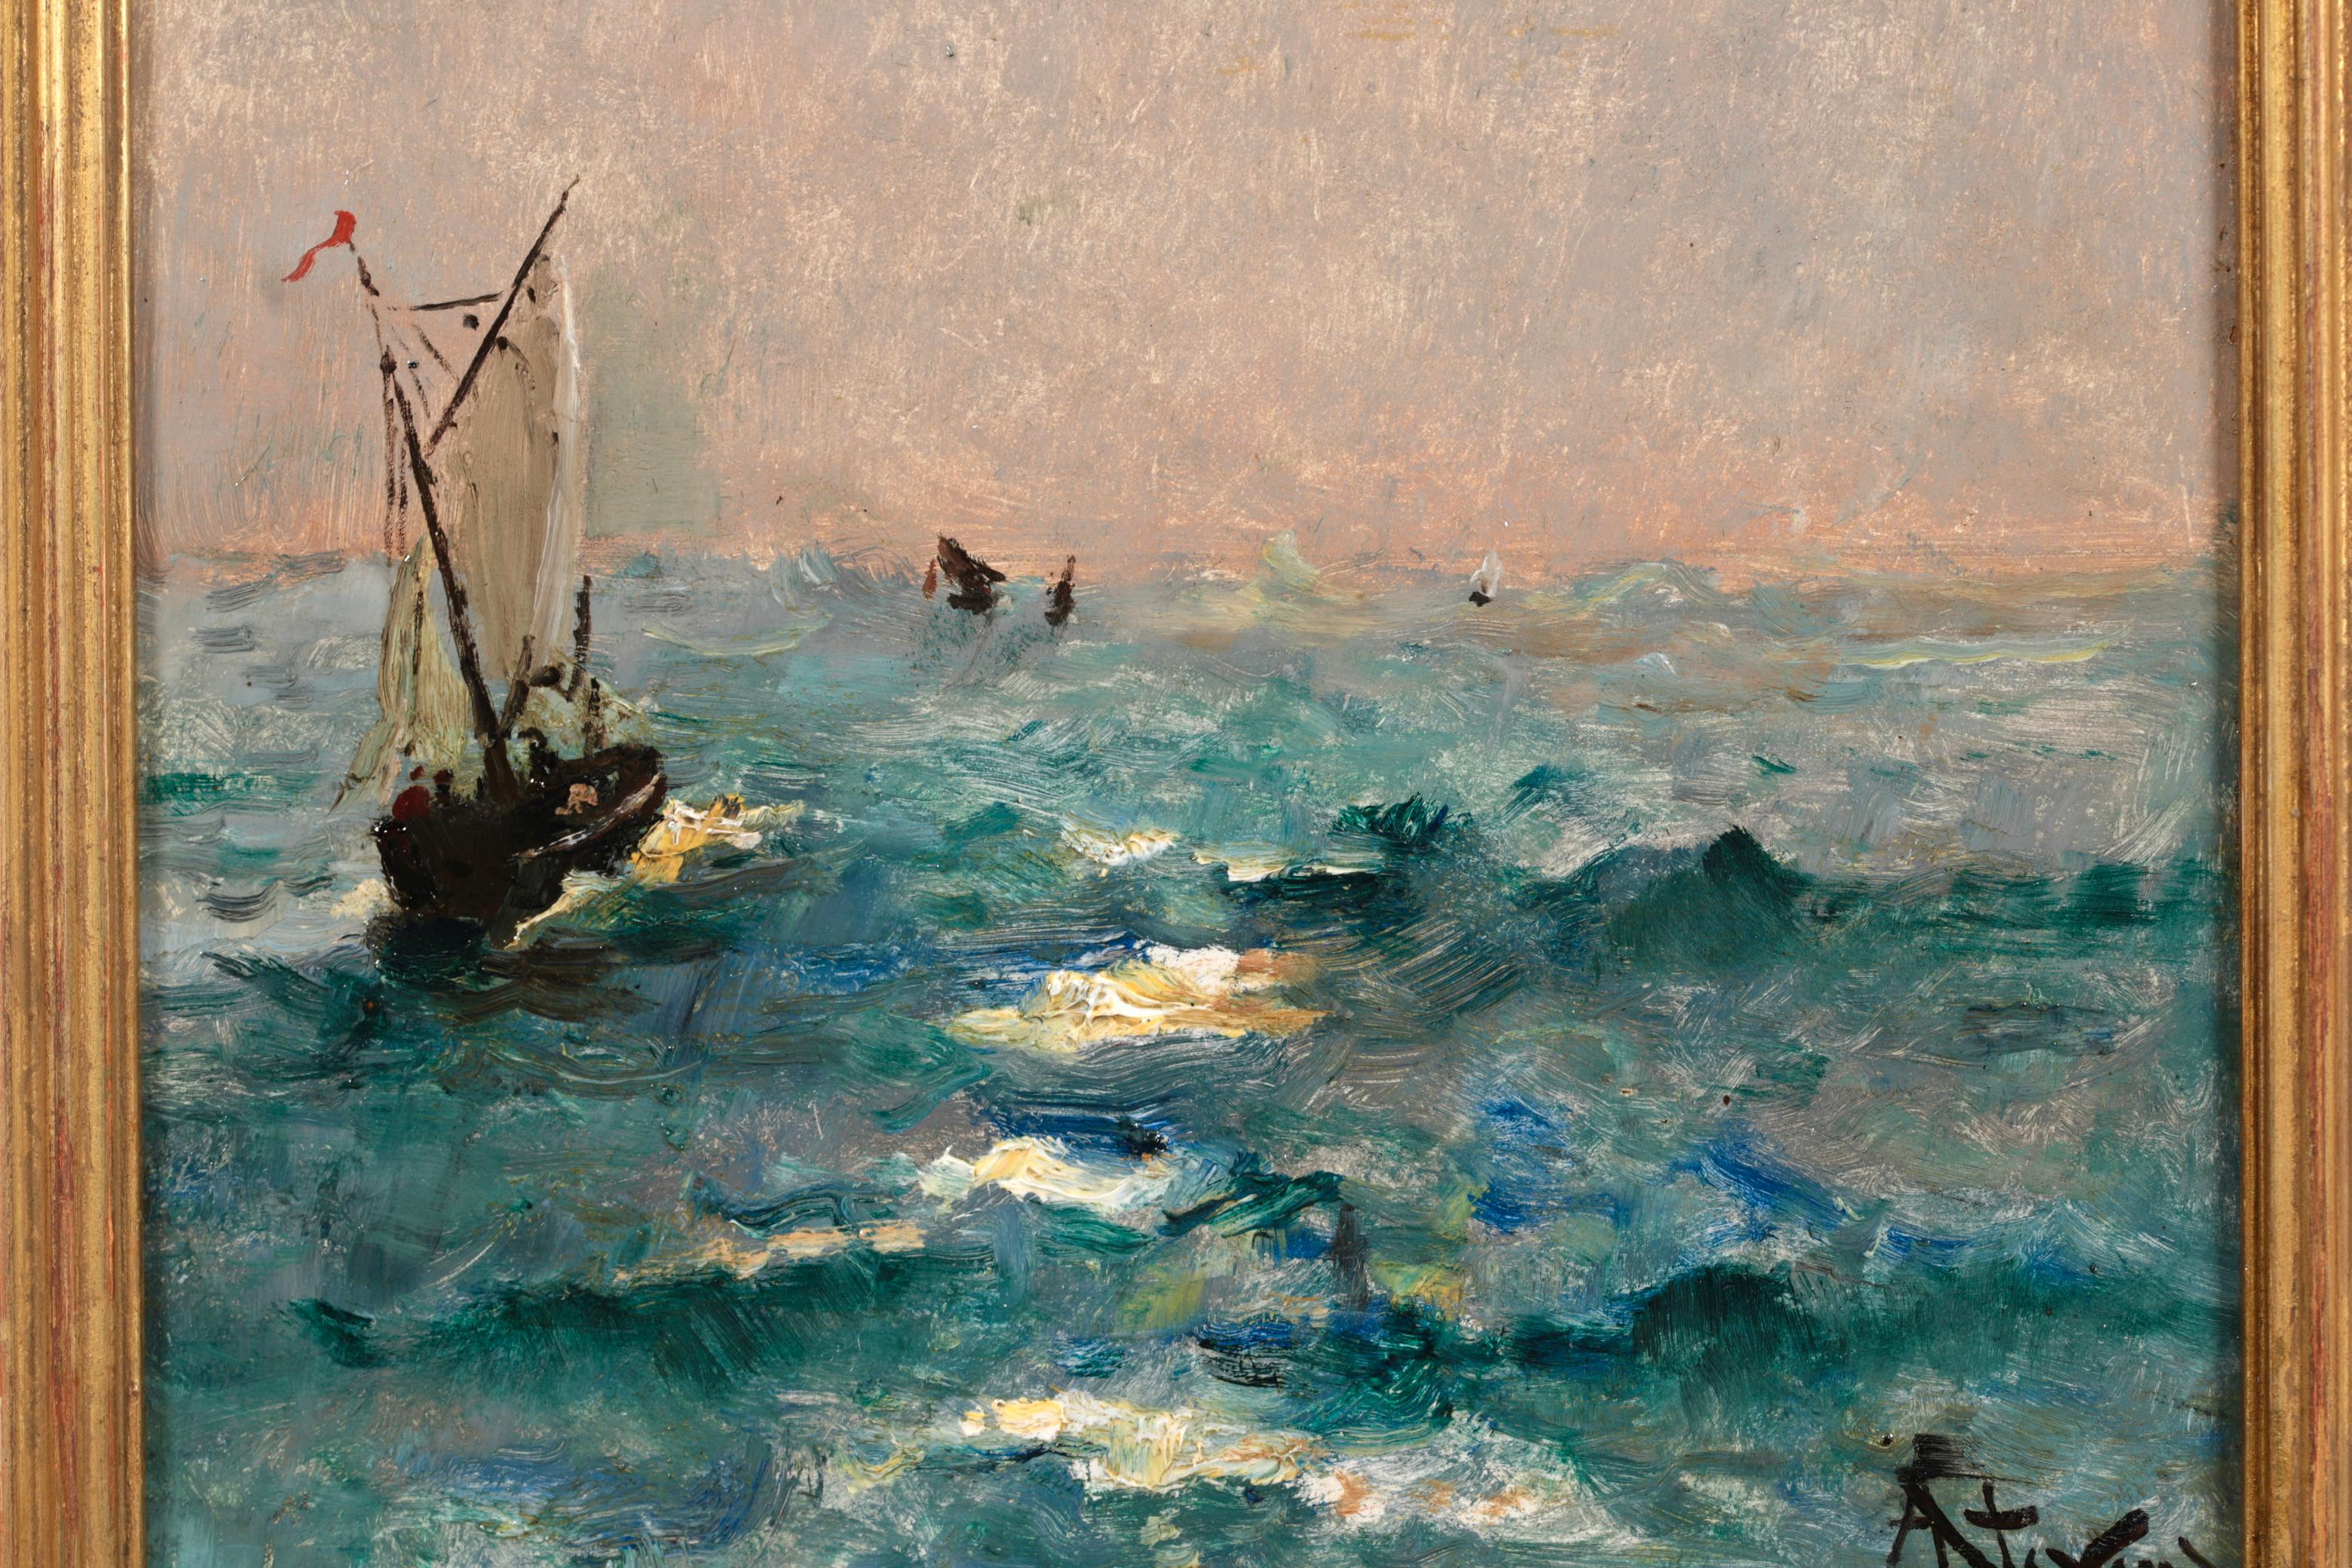 Huile sur panneau signée du peintre réaliste belge Alfred Emile Leopold Stevens. L'œuvre représente un voilier dans des eaux agitées à la nuit tombée. La lune brille derrière un nuage sombre, les vagues s'écrasent dans les eaux vertes et bleues et